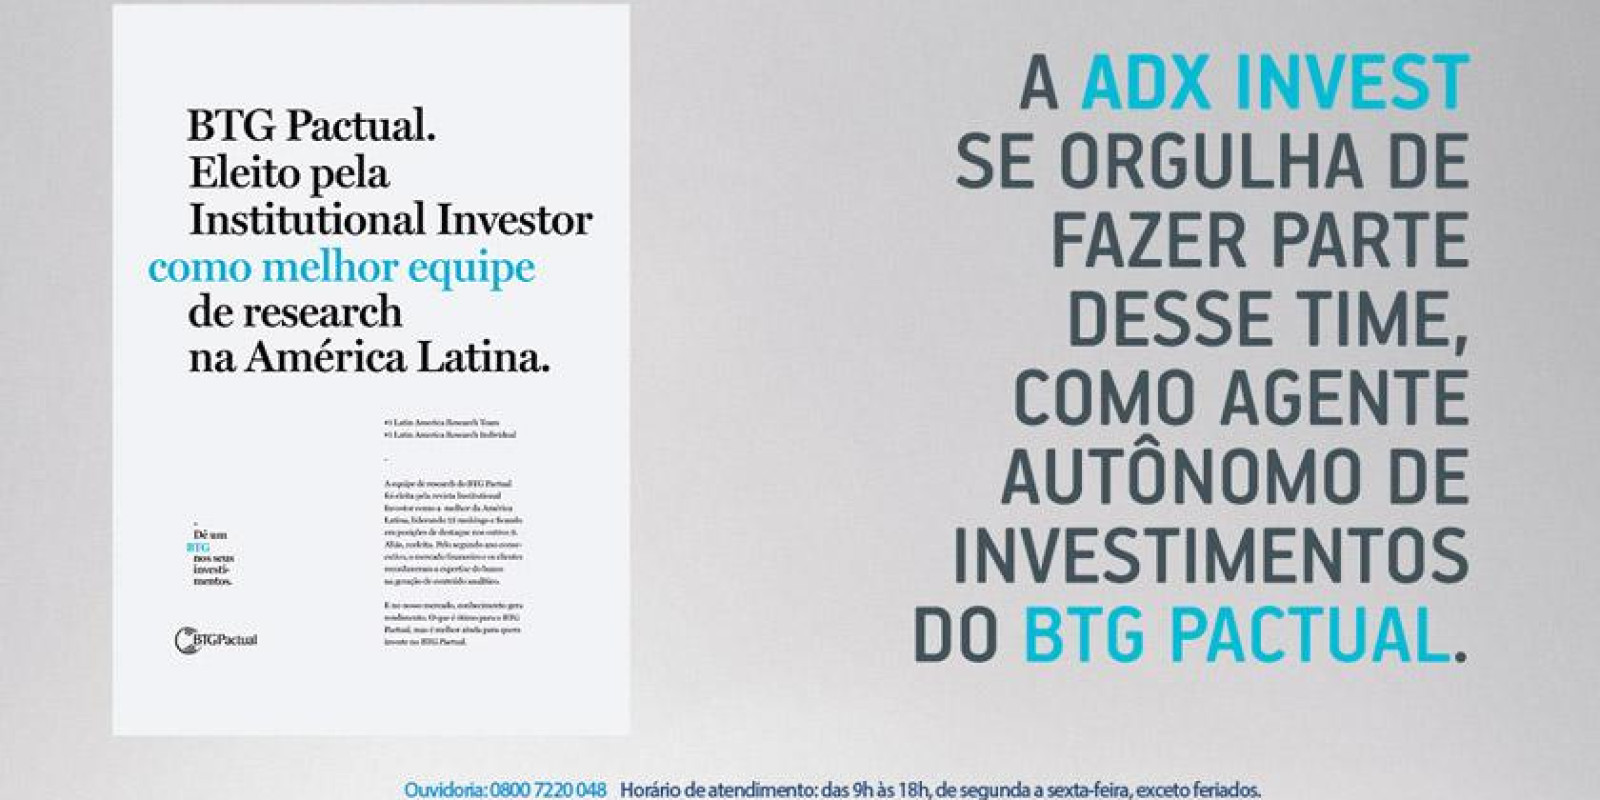 BTG Pactual: Eleita pela Institutional Investor como melhor equipe de research na América Latina